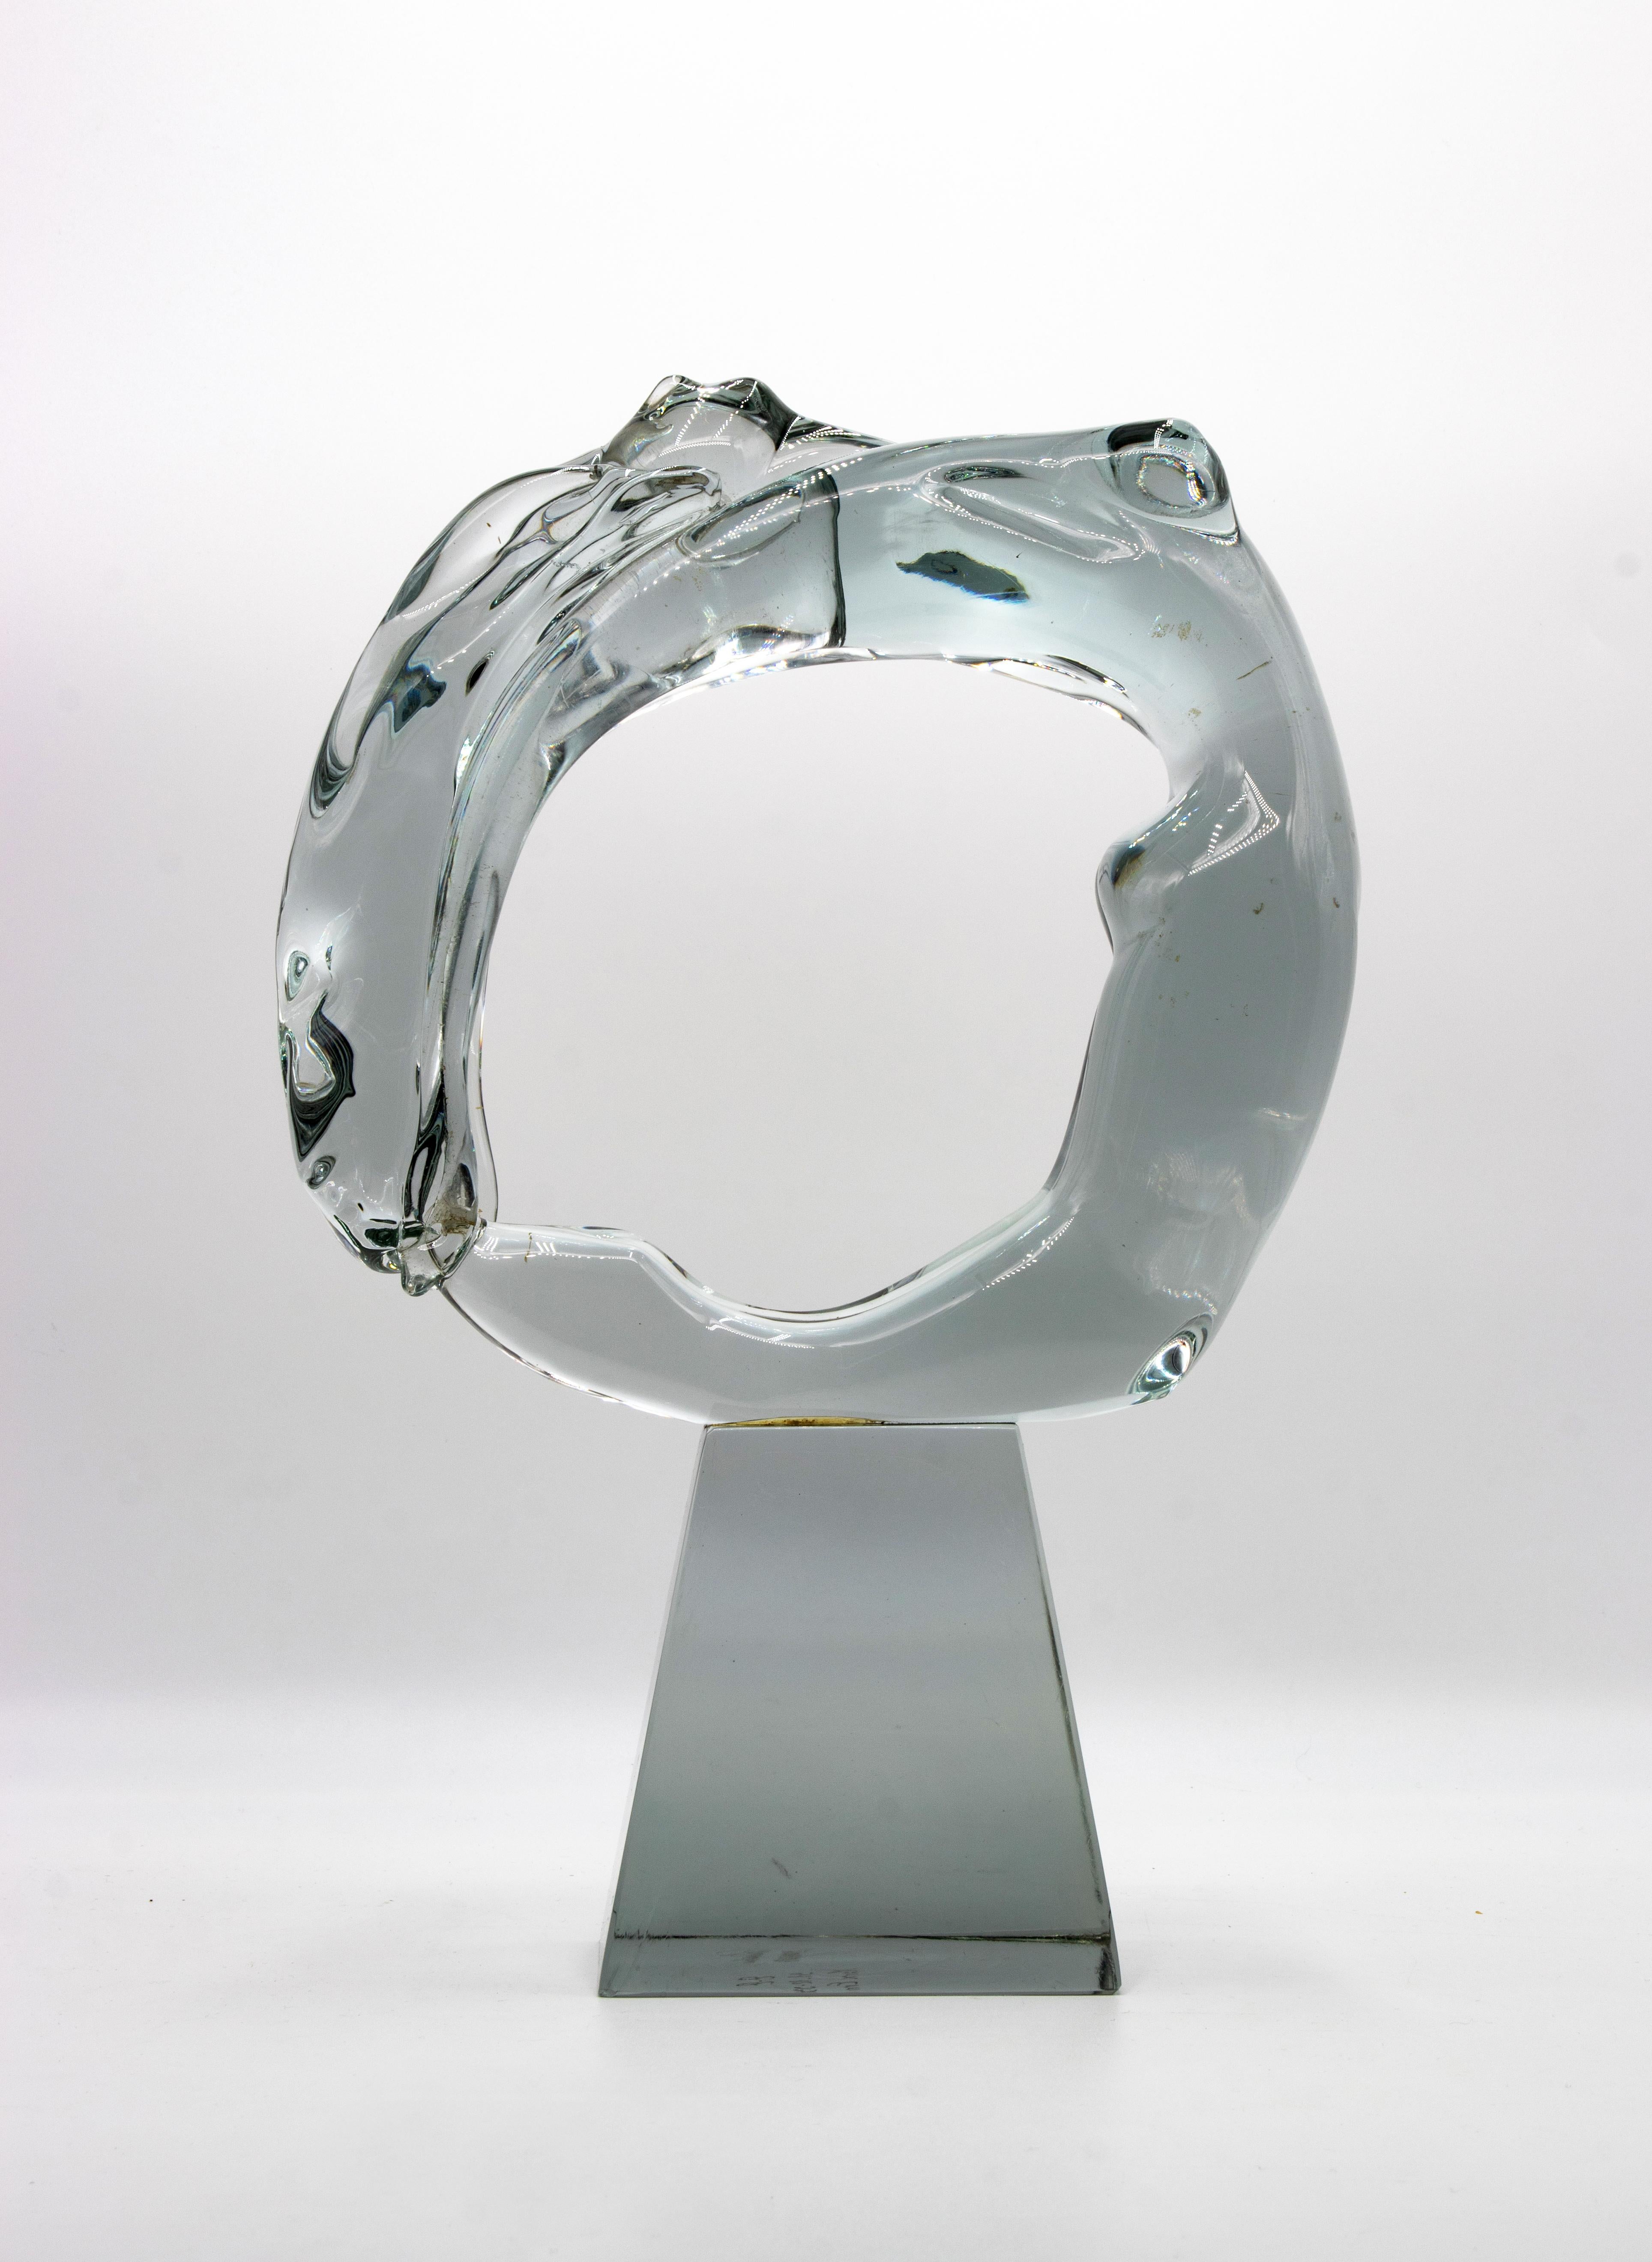 Woman est une sculpture en verre représentant le corps d'une femme s'inscrivant dans un cercle. Réalisé par Vetrerie Schiavone, Murano en 1993 . 

Daté à la base du 12-31-93. Signature à l'acide sur le fond.

Du verre de Murano.

Excellentes